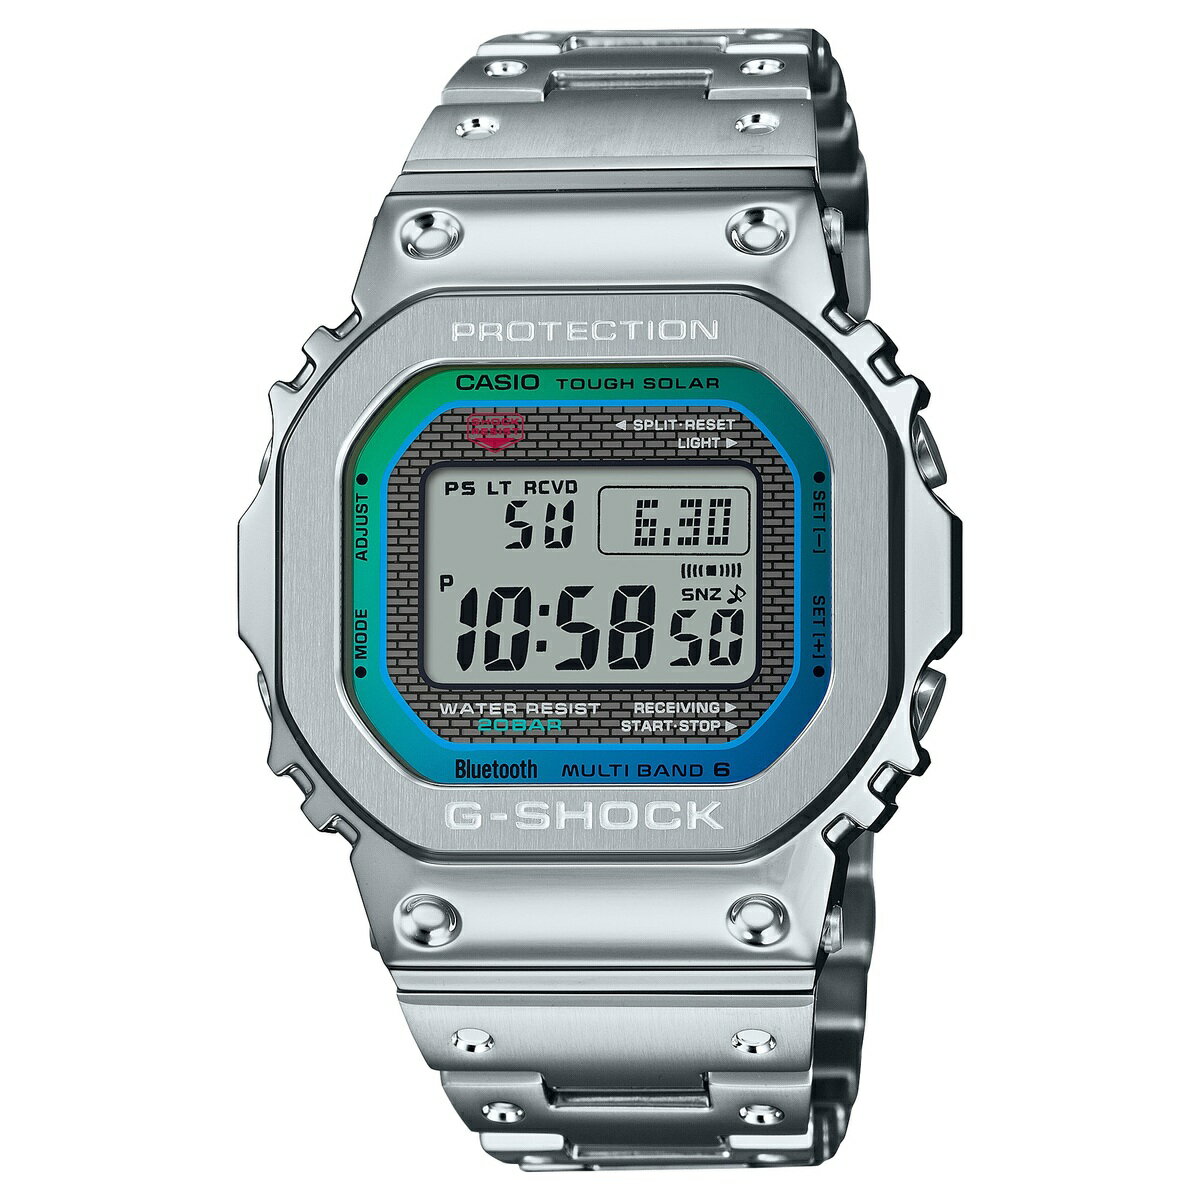 楽天ココクロス楽天市場店CASIO G-SHOCK カシオ ジーショック GMW-B5000PC-1JF フルメタル レインボーカラー メンズ腕時計 Bluetooth対応 国内正規品